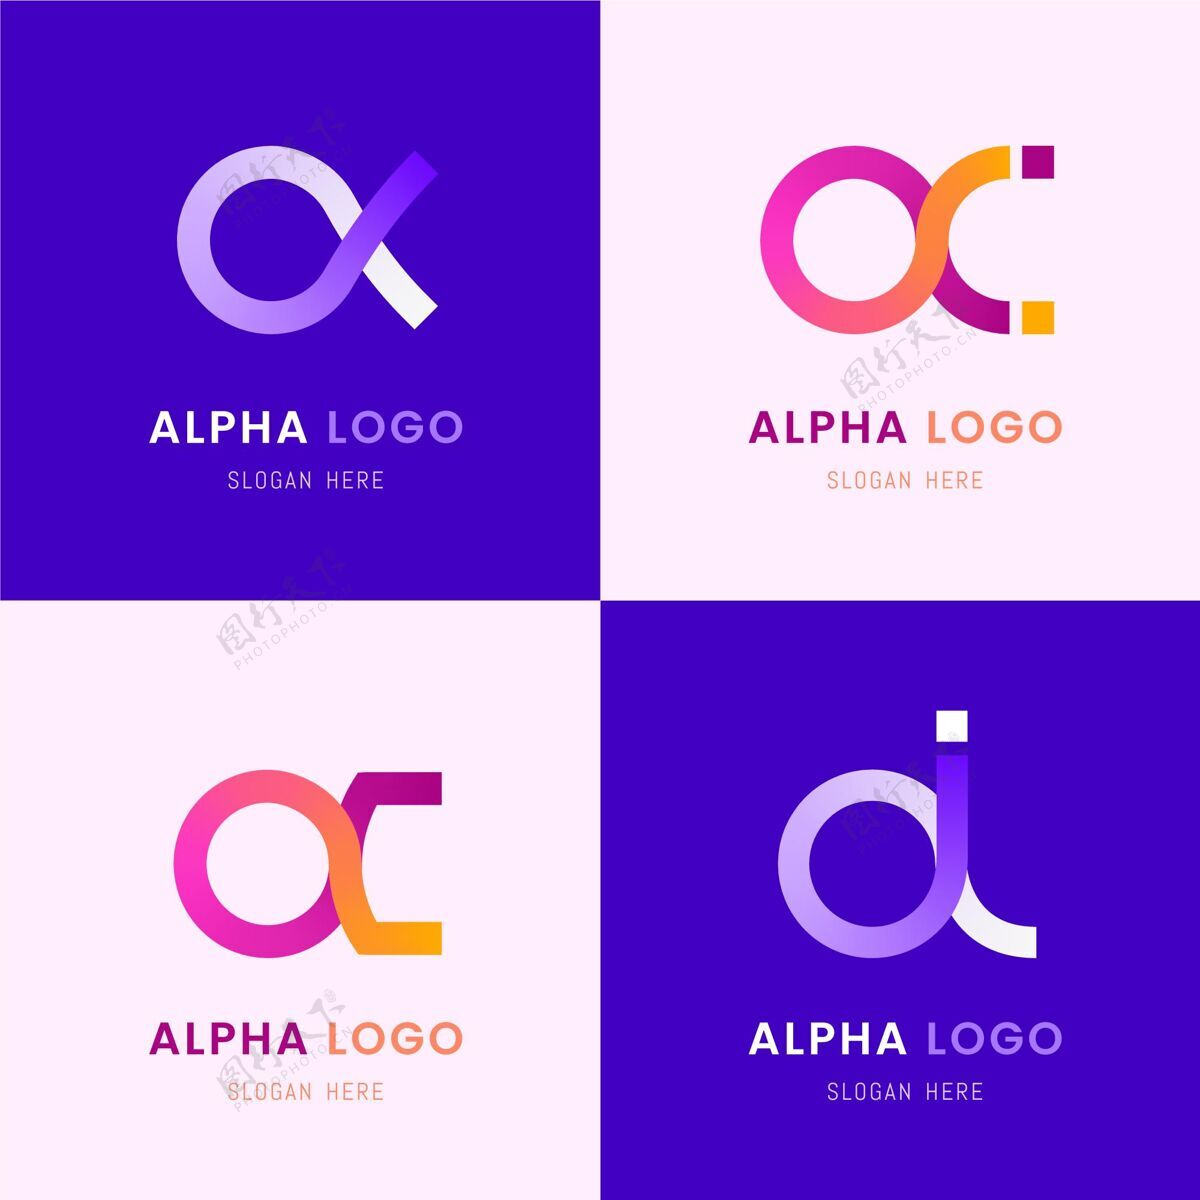 企业平面设计彩色阿尔法标志平面设计企业标识公司